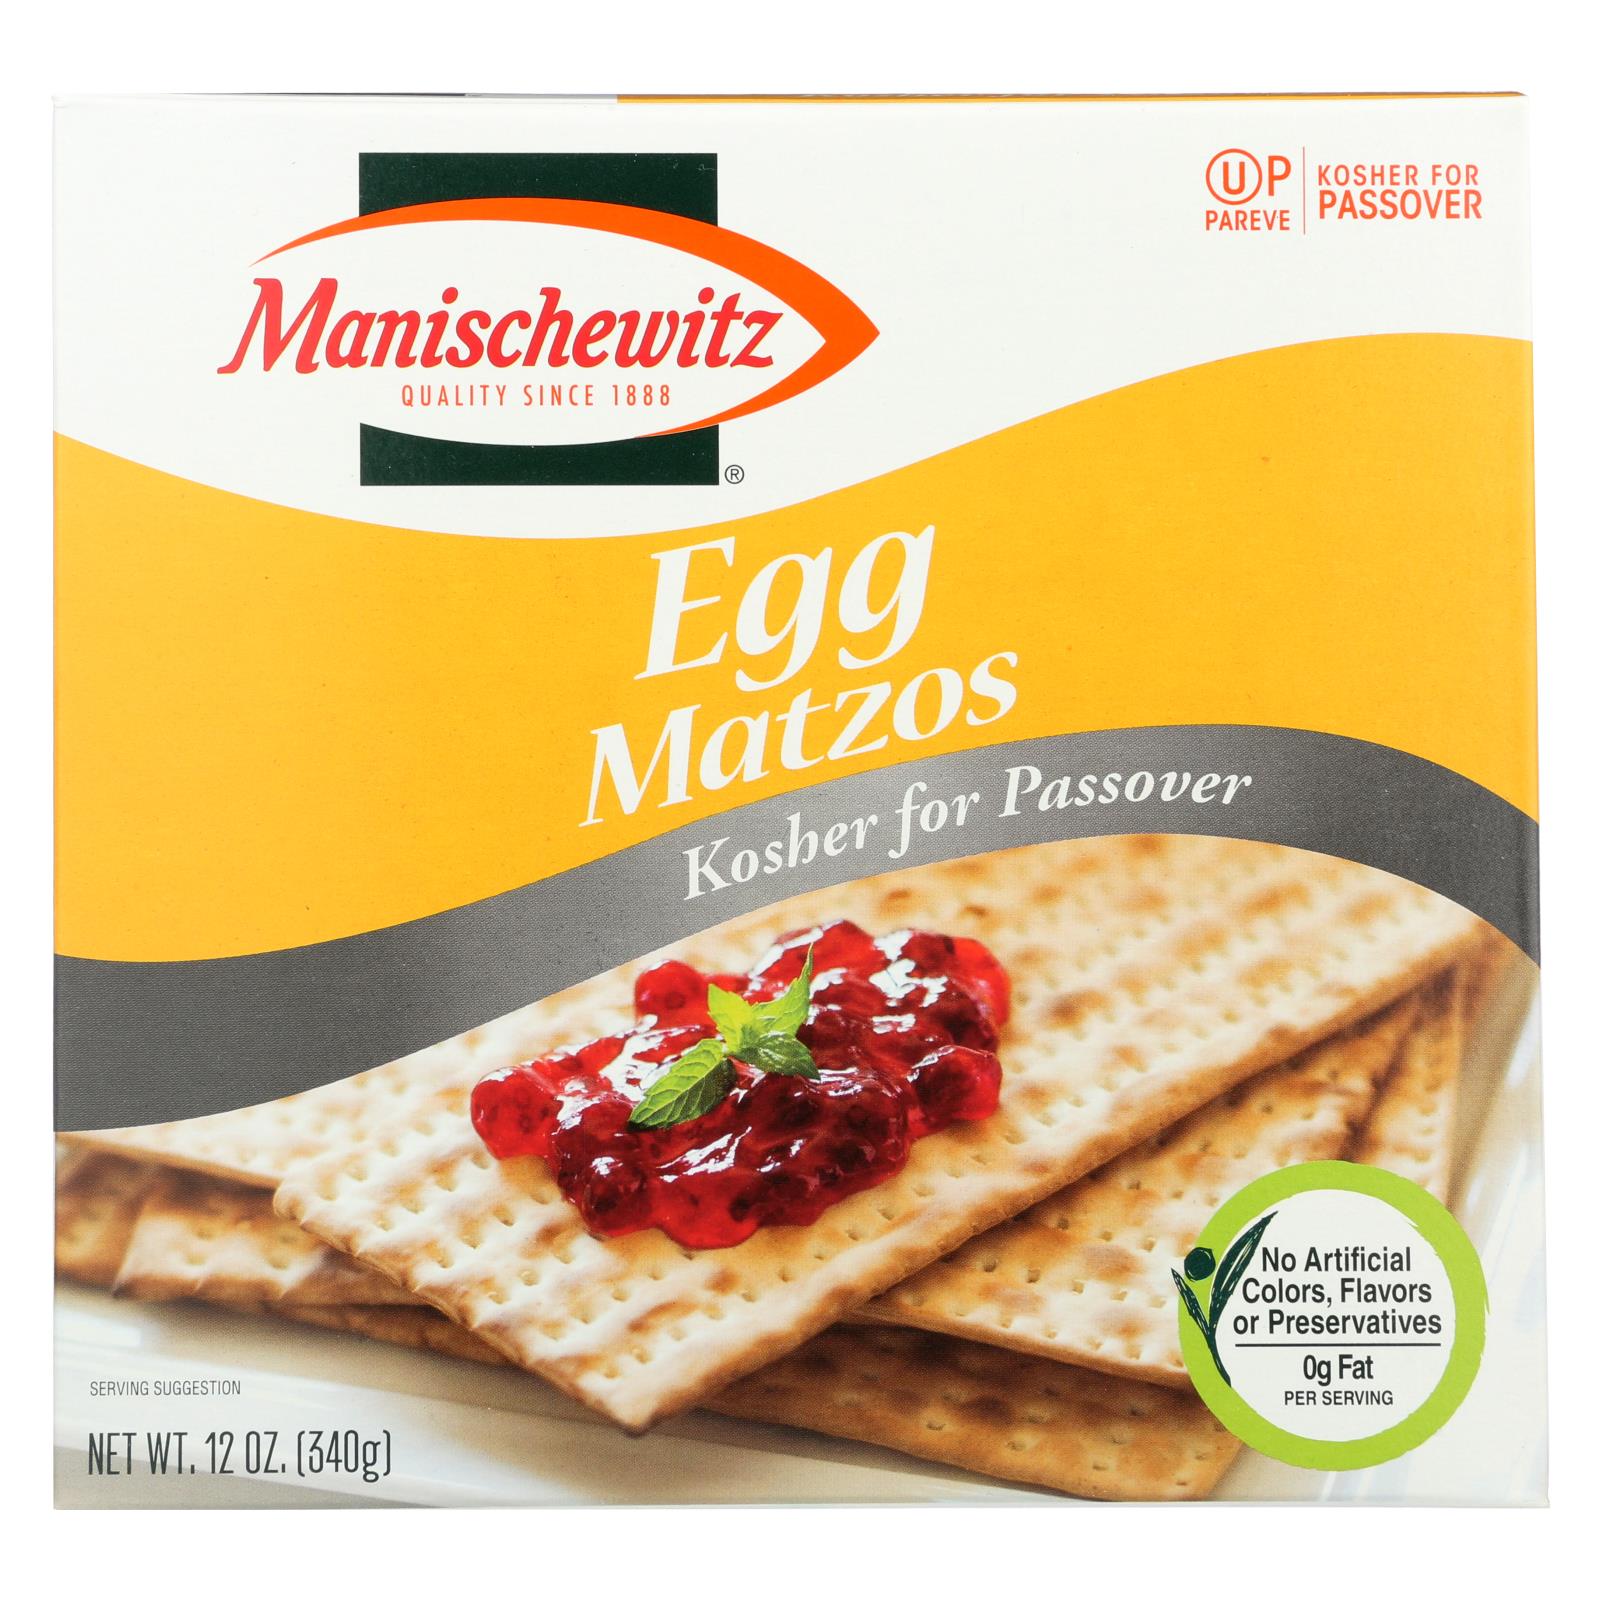 Manischewitz - Egg Matzo - Passover - 24개 묶음상품 -12 oz.